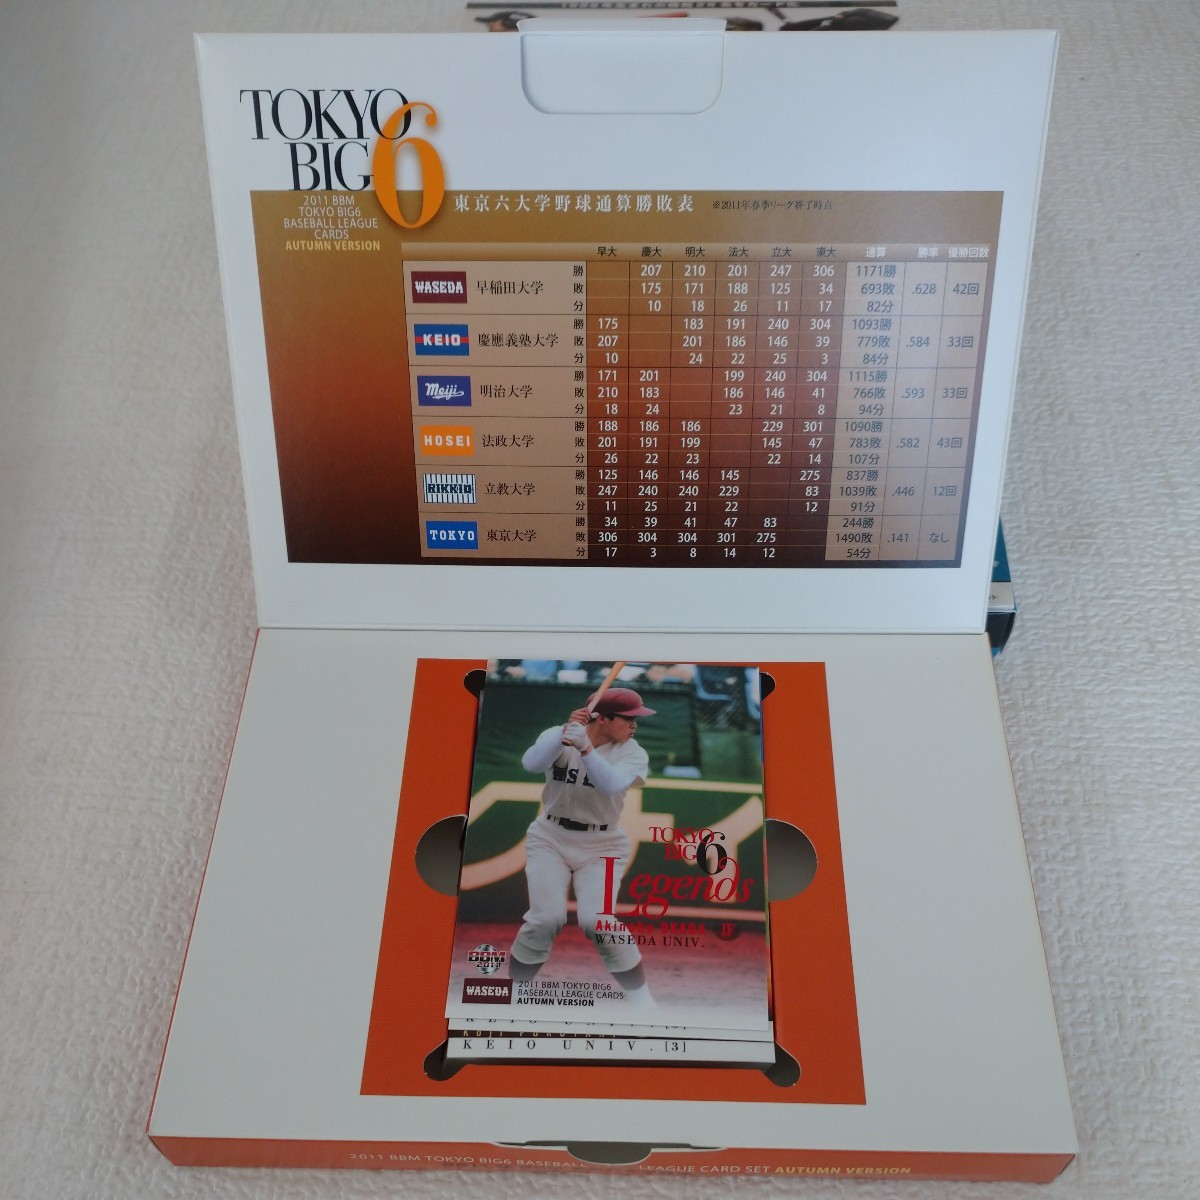 a11 野球カード ベースボールカード ダイアモンドエイジ 1989 2012 東京6大学野球カードセット コナミ日本シリーズ2012カードセット _画像2